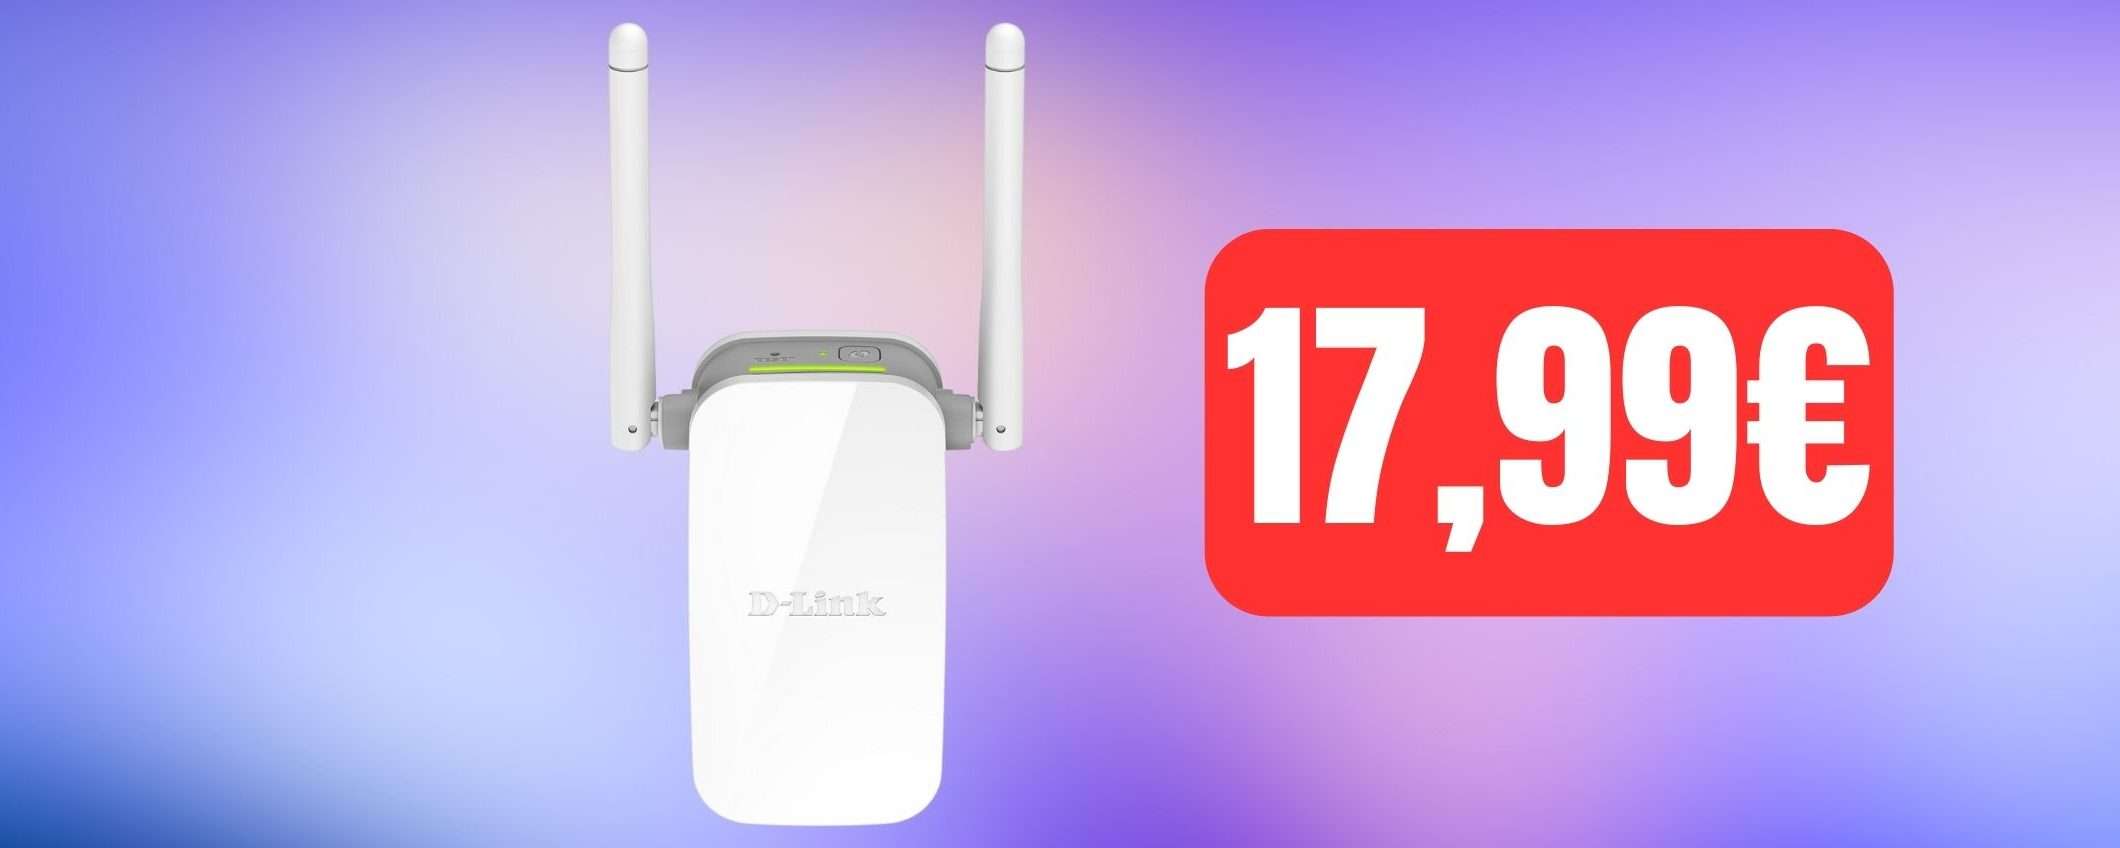 Ripetitore wireless D-Link in offerta Amazon: ti bastano 17,99€